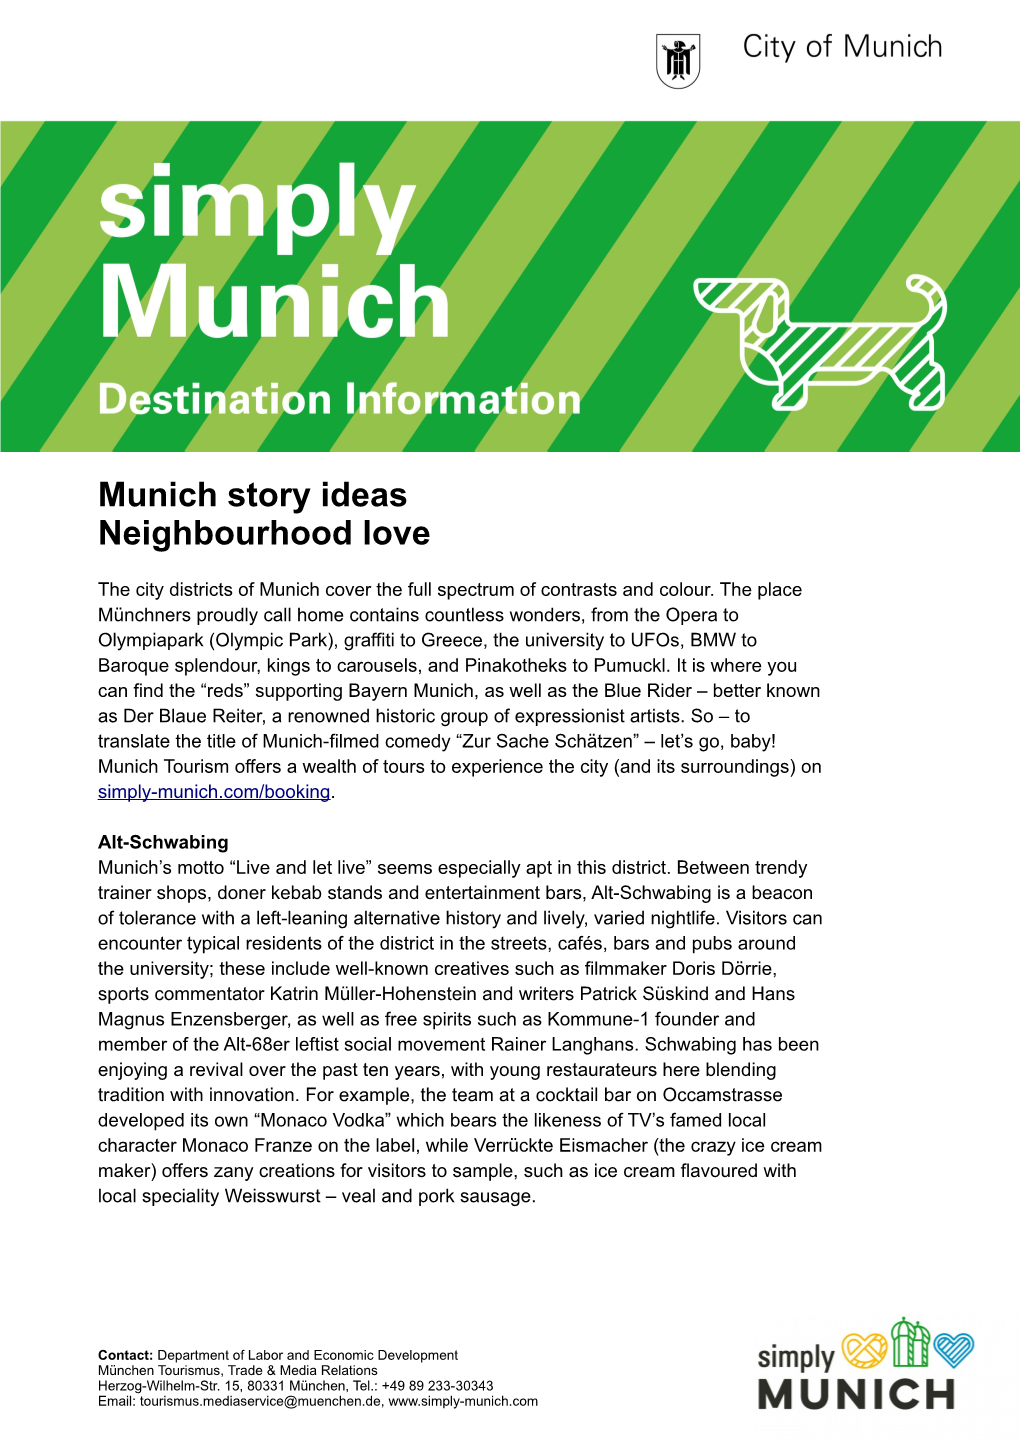 Munich Story Ideas Neighbourhood Love